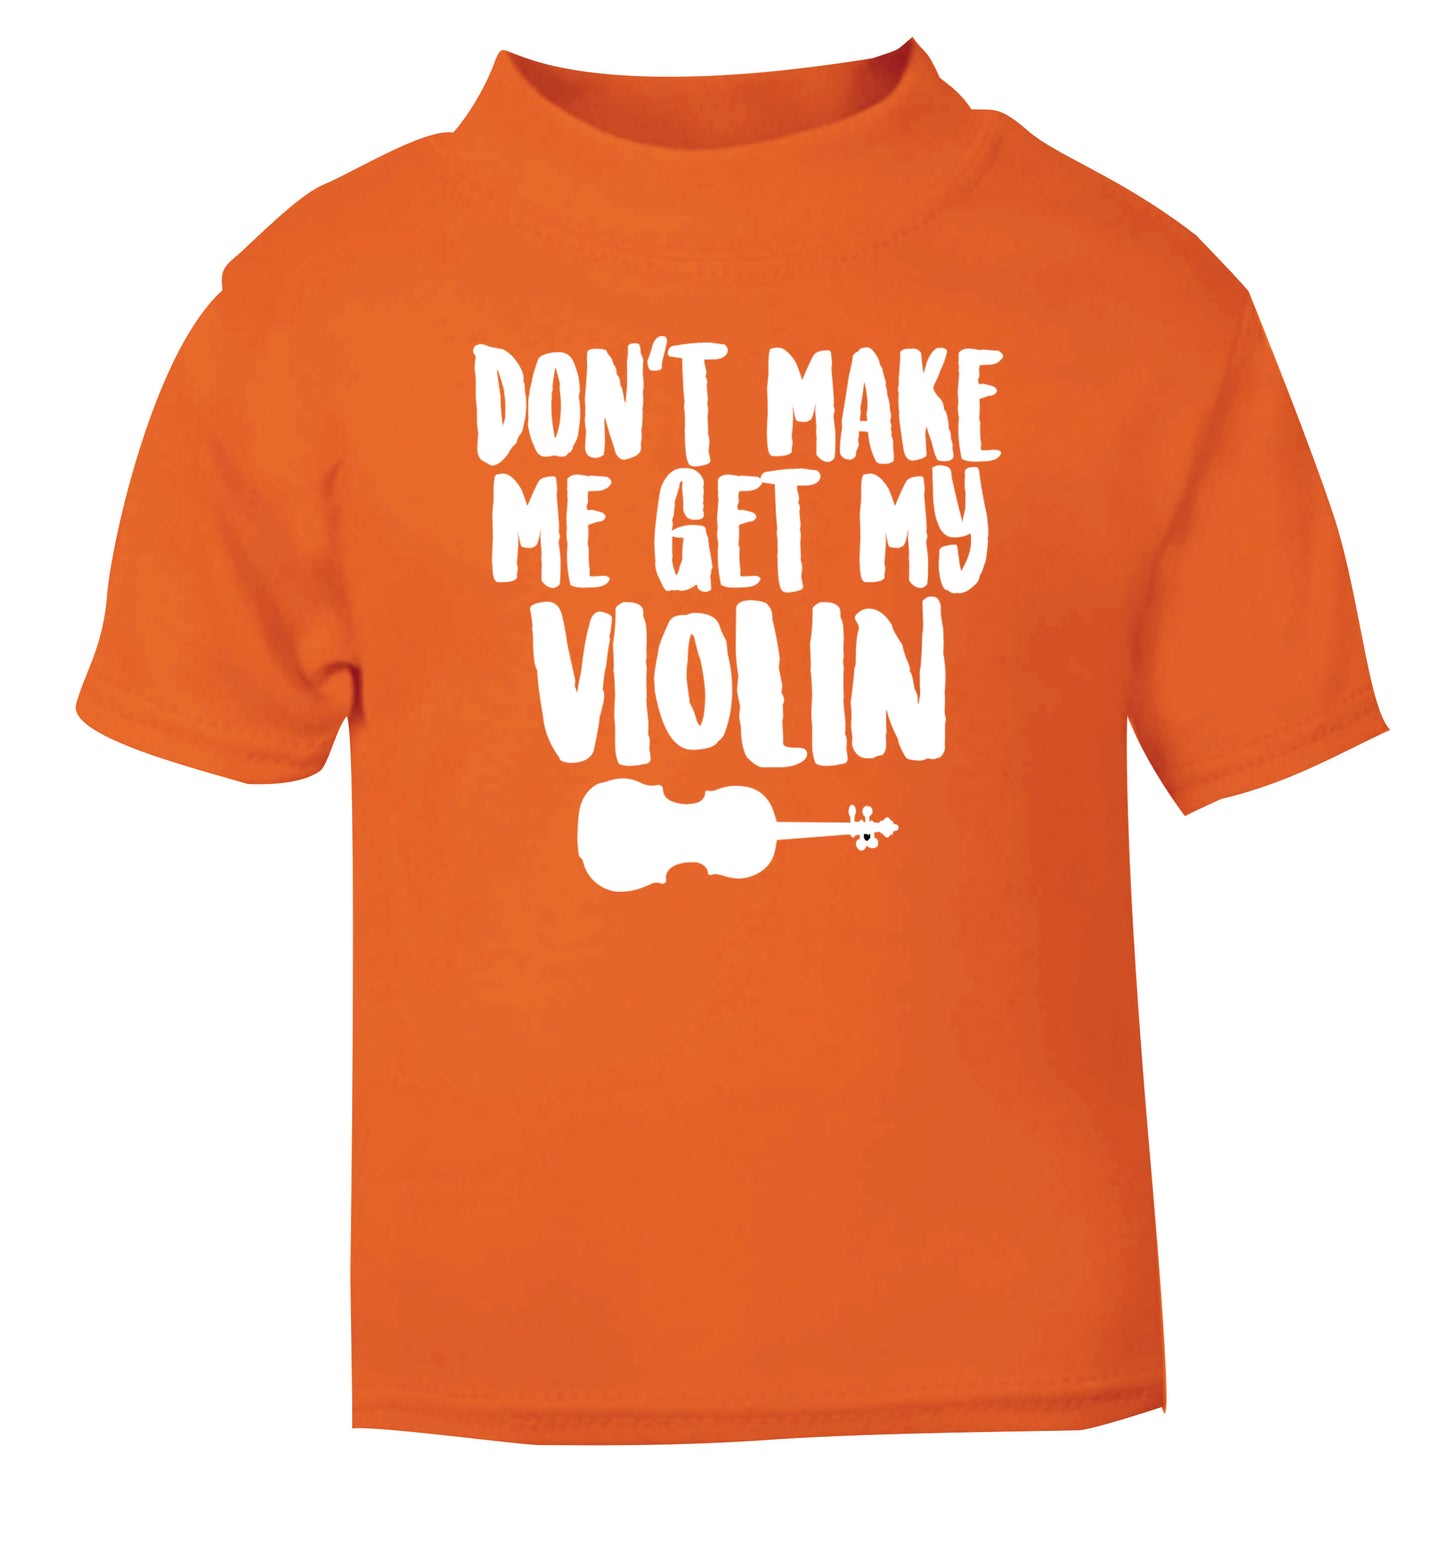 Don't make me get my violin orange Baby Toddler Tshirt 2 Years